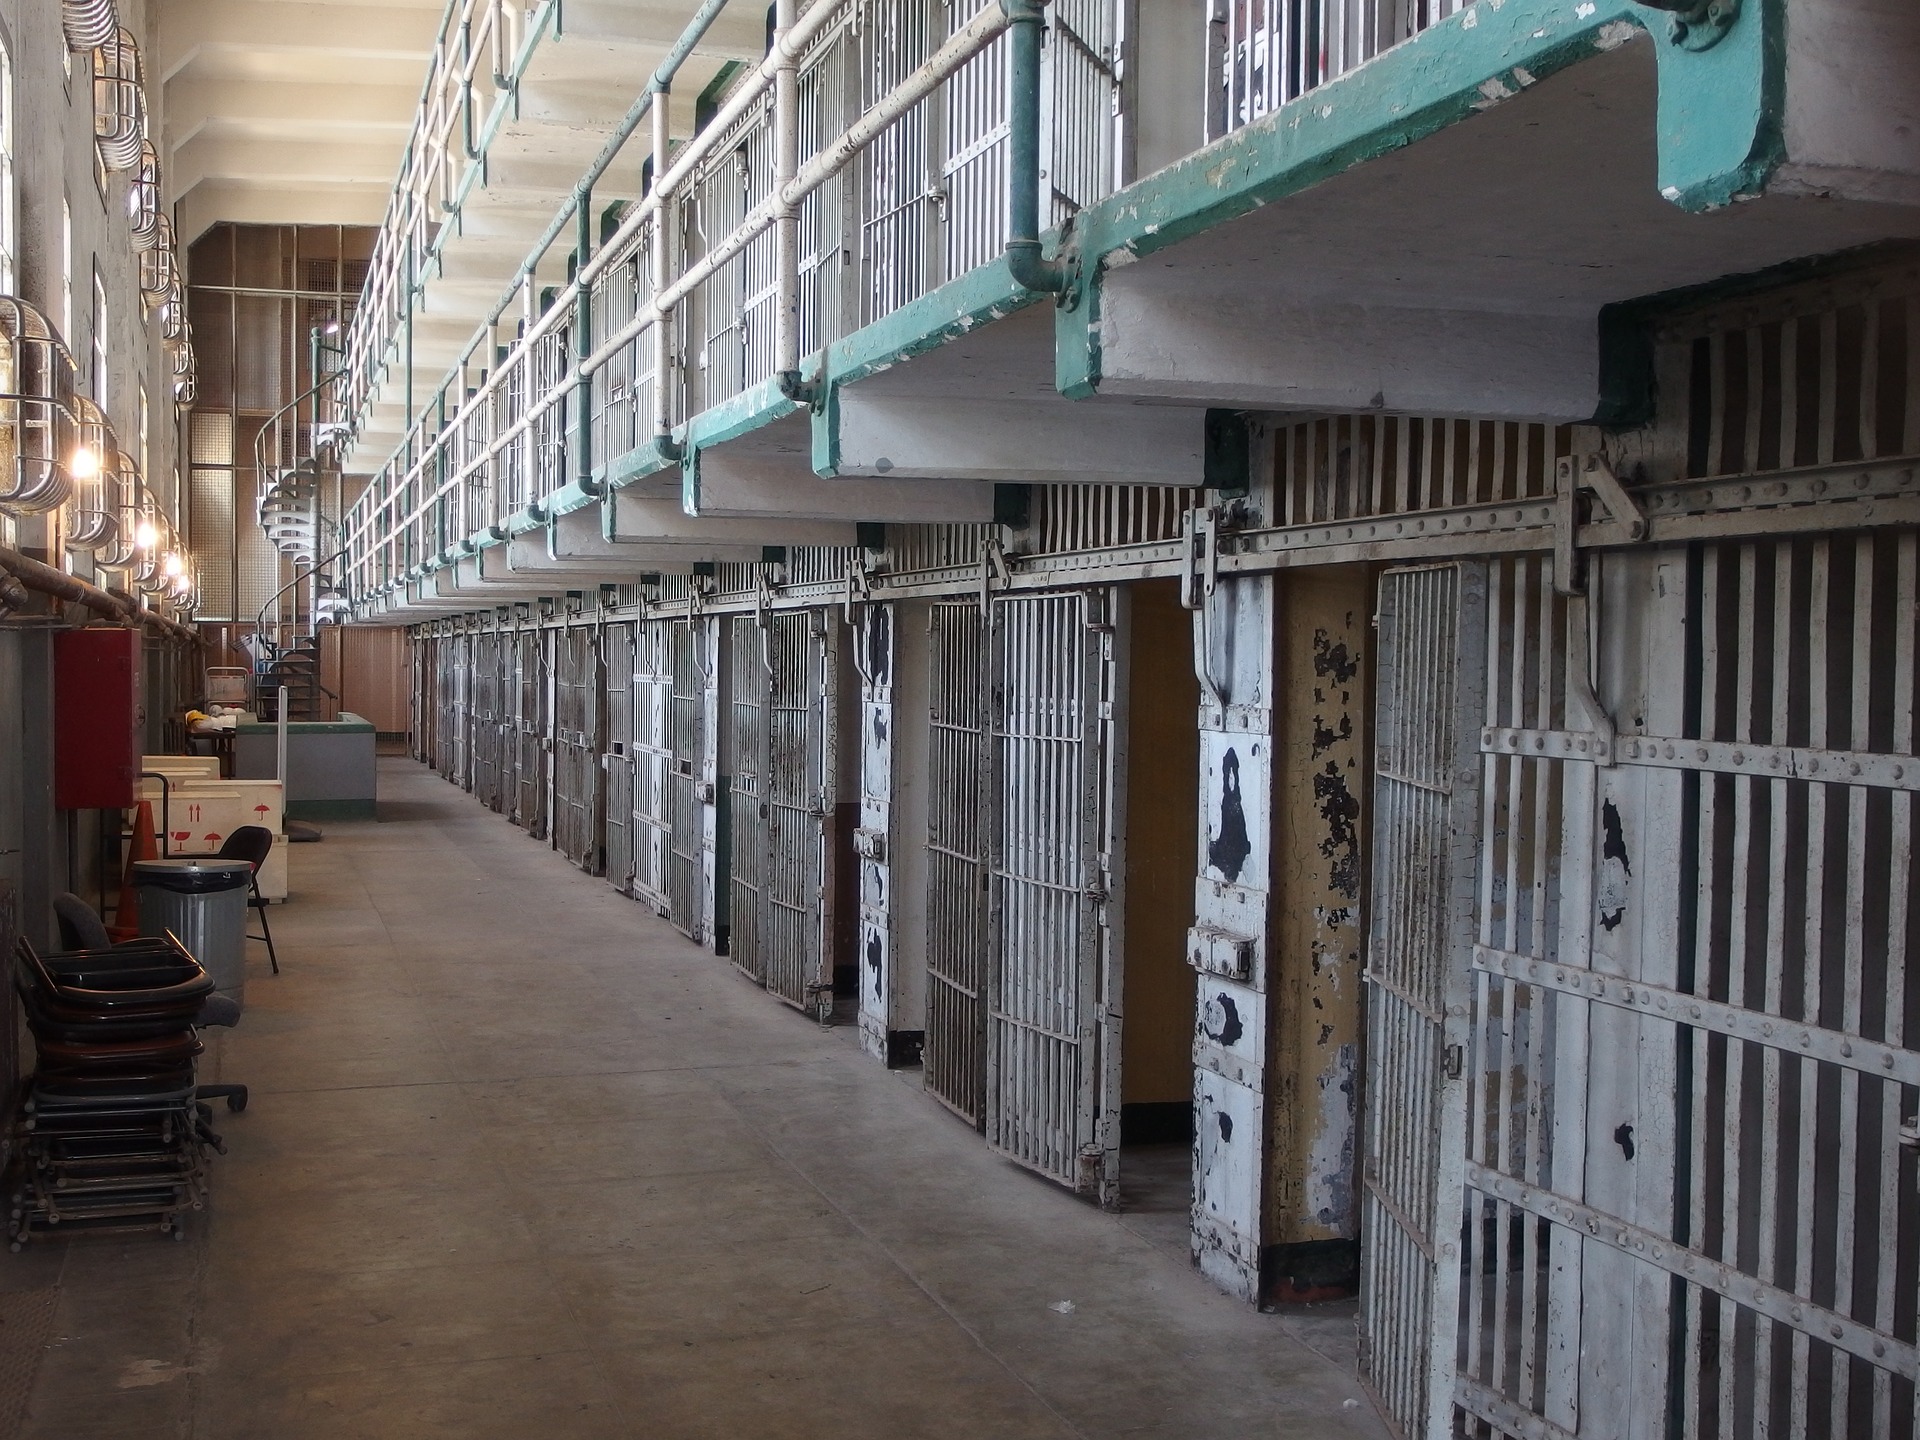 Lavori socialmente utili faticosi: un detenuto sceglie di tornare in cella